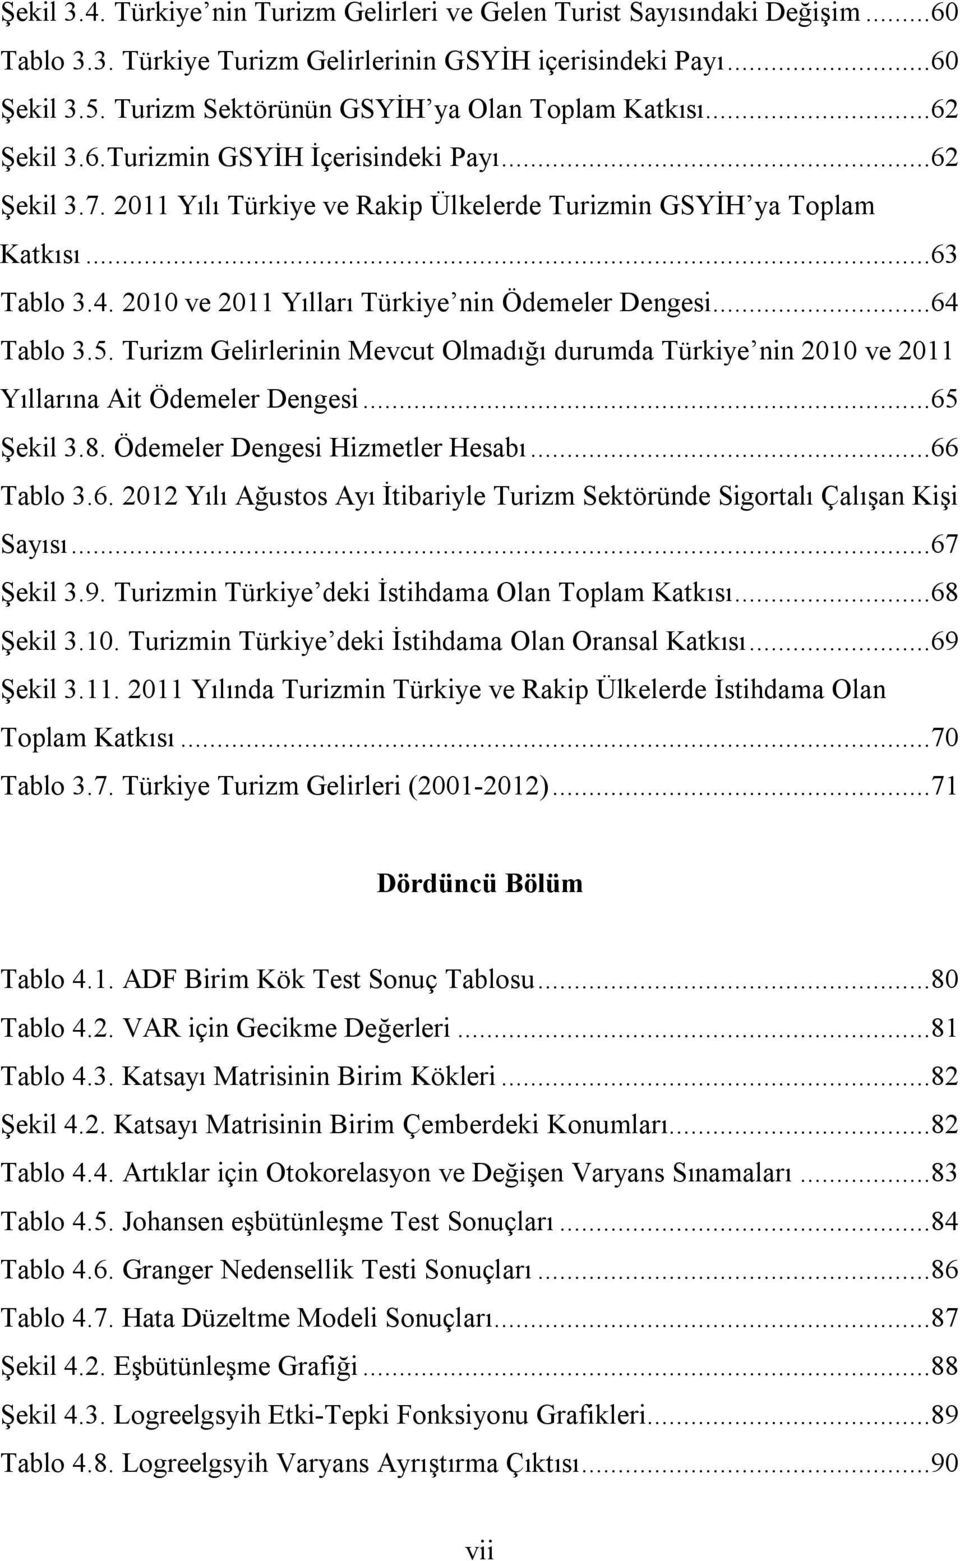 2010 ve 2011 Yılları Türkiye nin Ödemeler Dengesi...64 Tablo 3.5. Turizm Gelirlerinin Mevcut Olmadığı durumda Türkiye nin 2010 ve 2011 Yıllarına Ait Ödemeler Dengesi...65 Şekil 3.8.